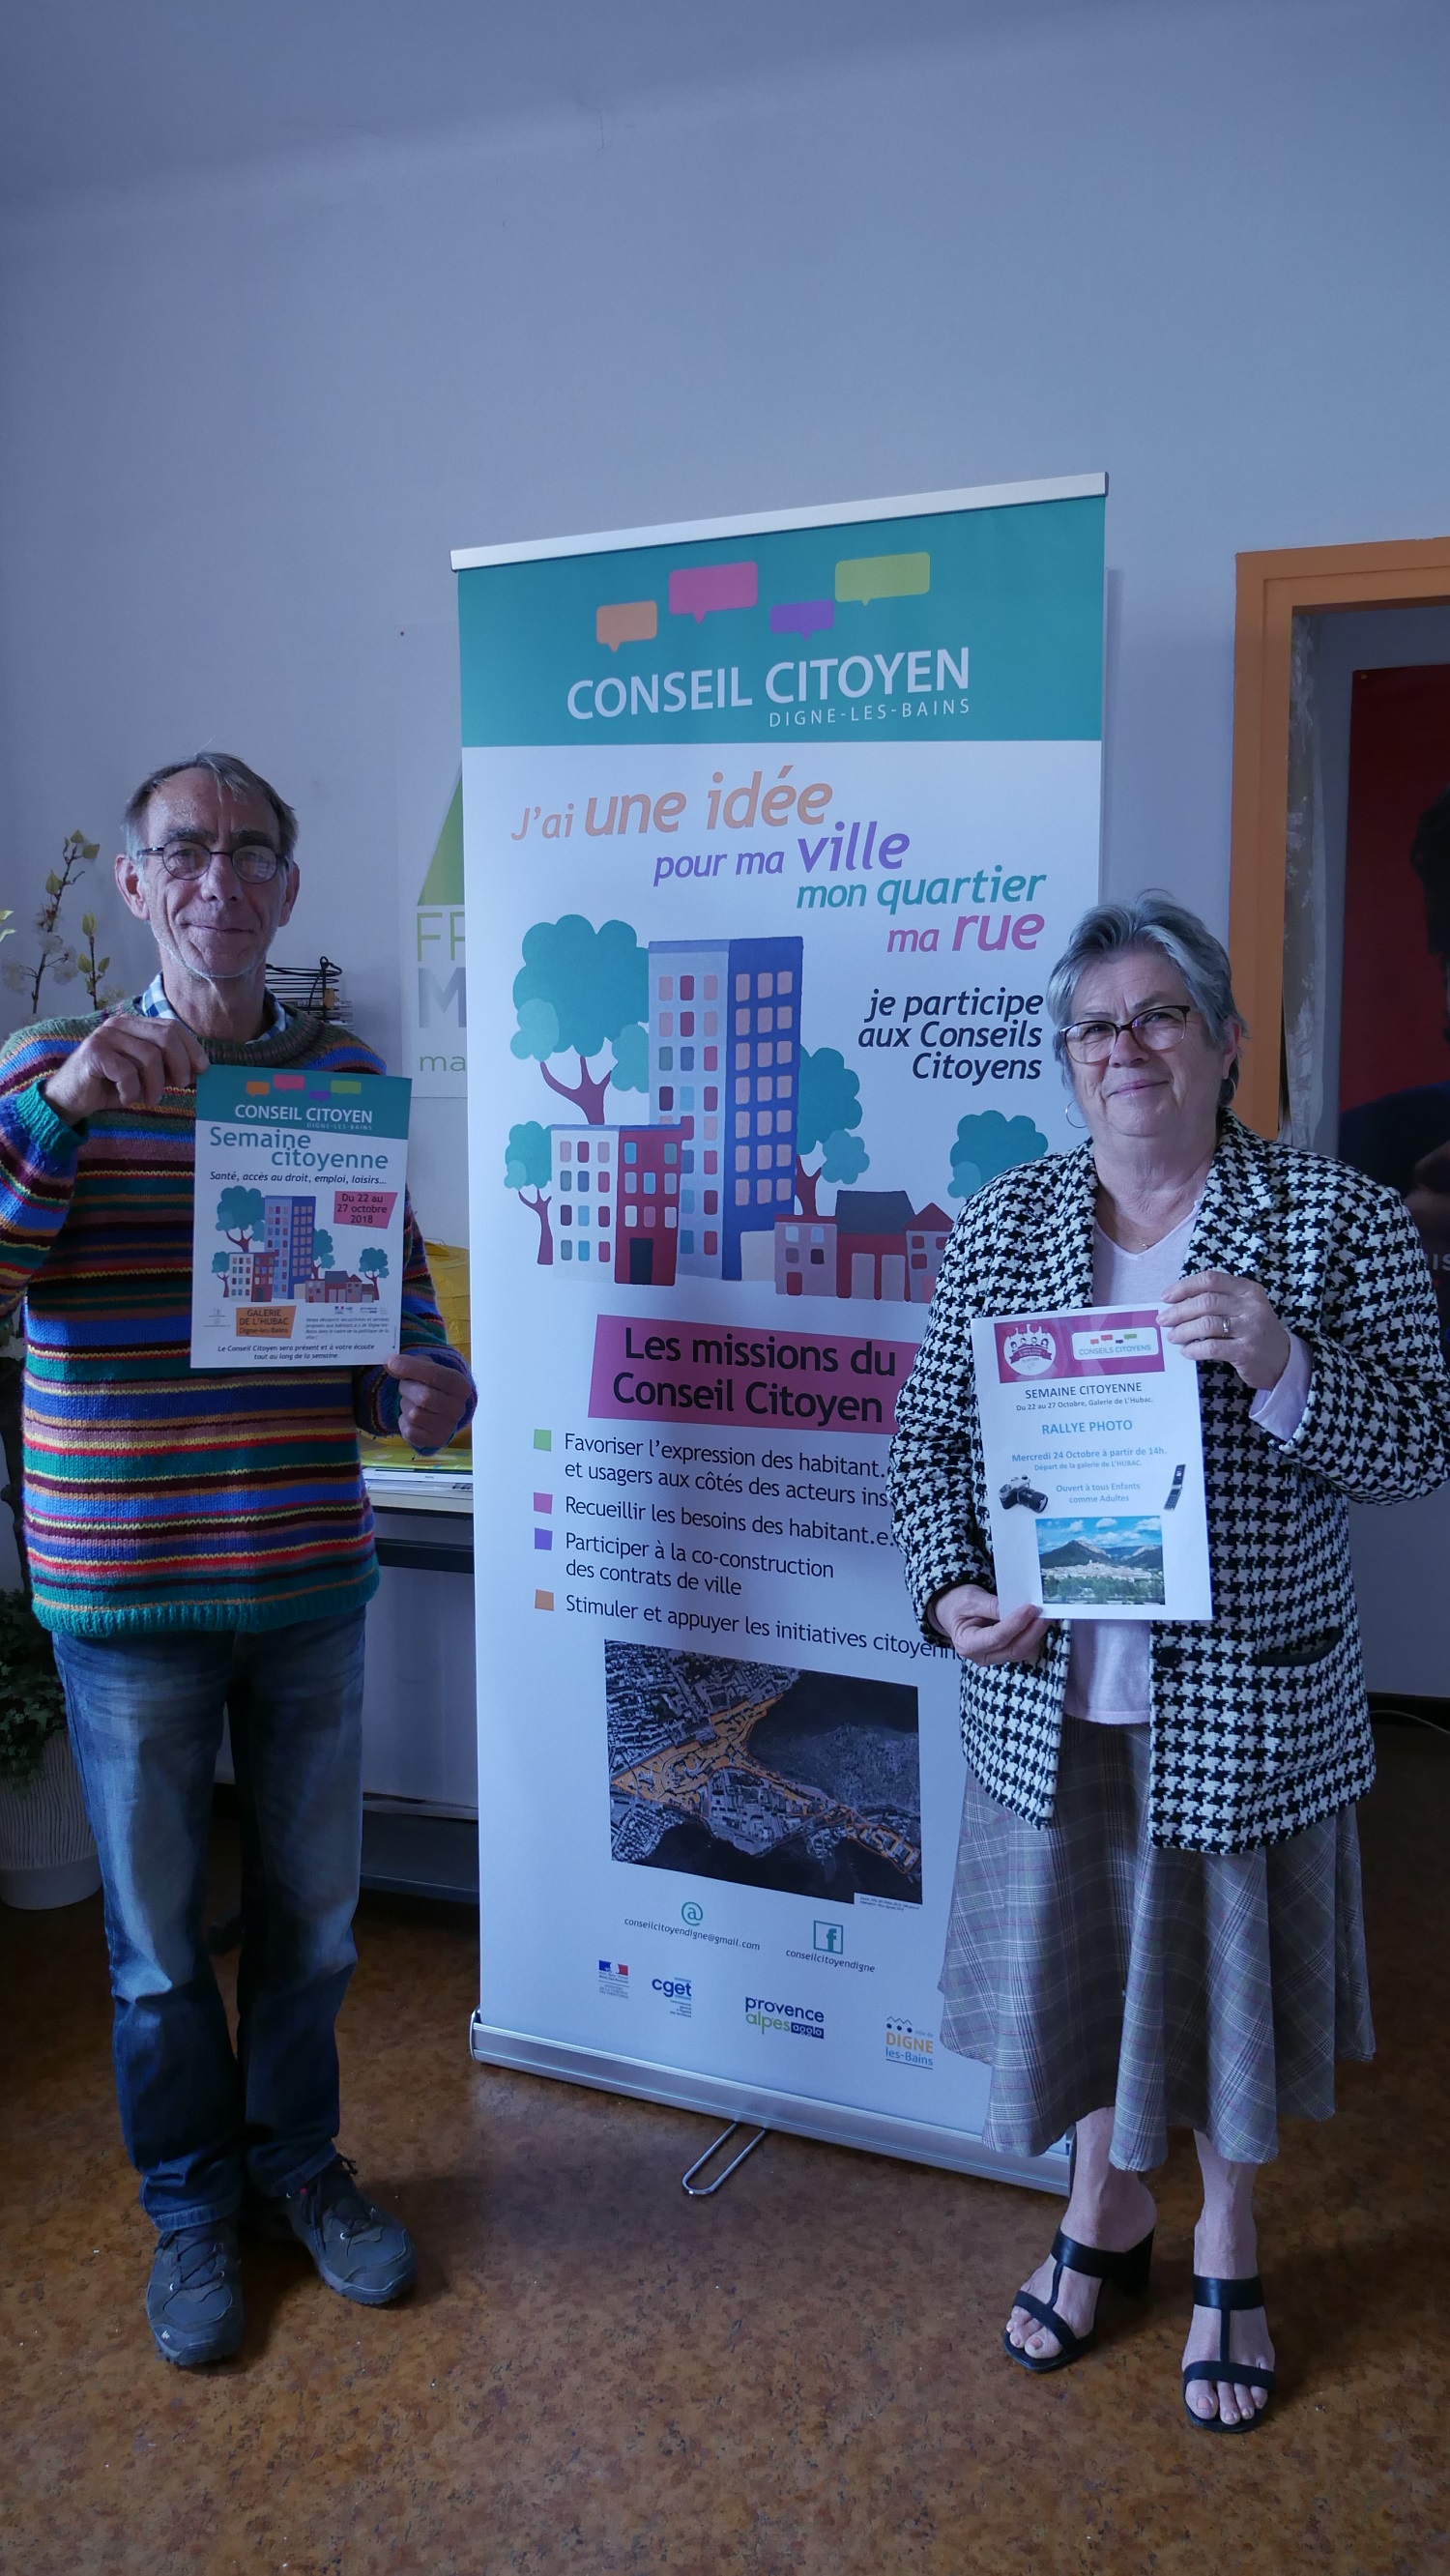 Semaine citoyenne organisée par le conseil citoyen de la ville de Digne-les-Bains